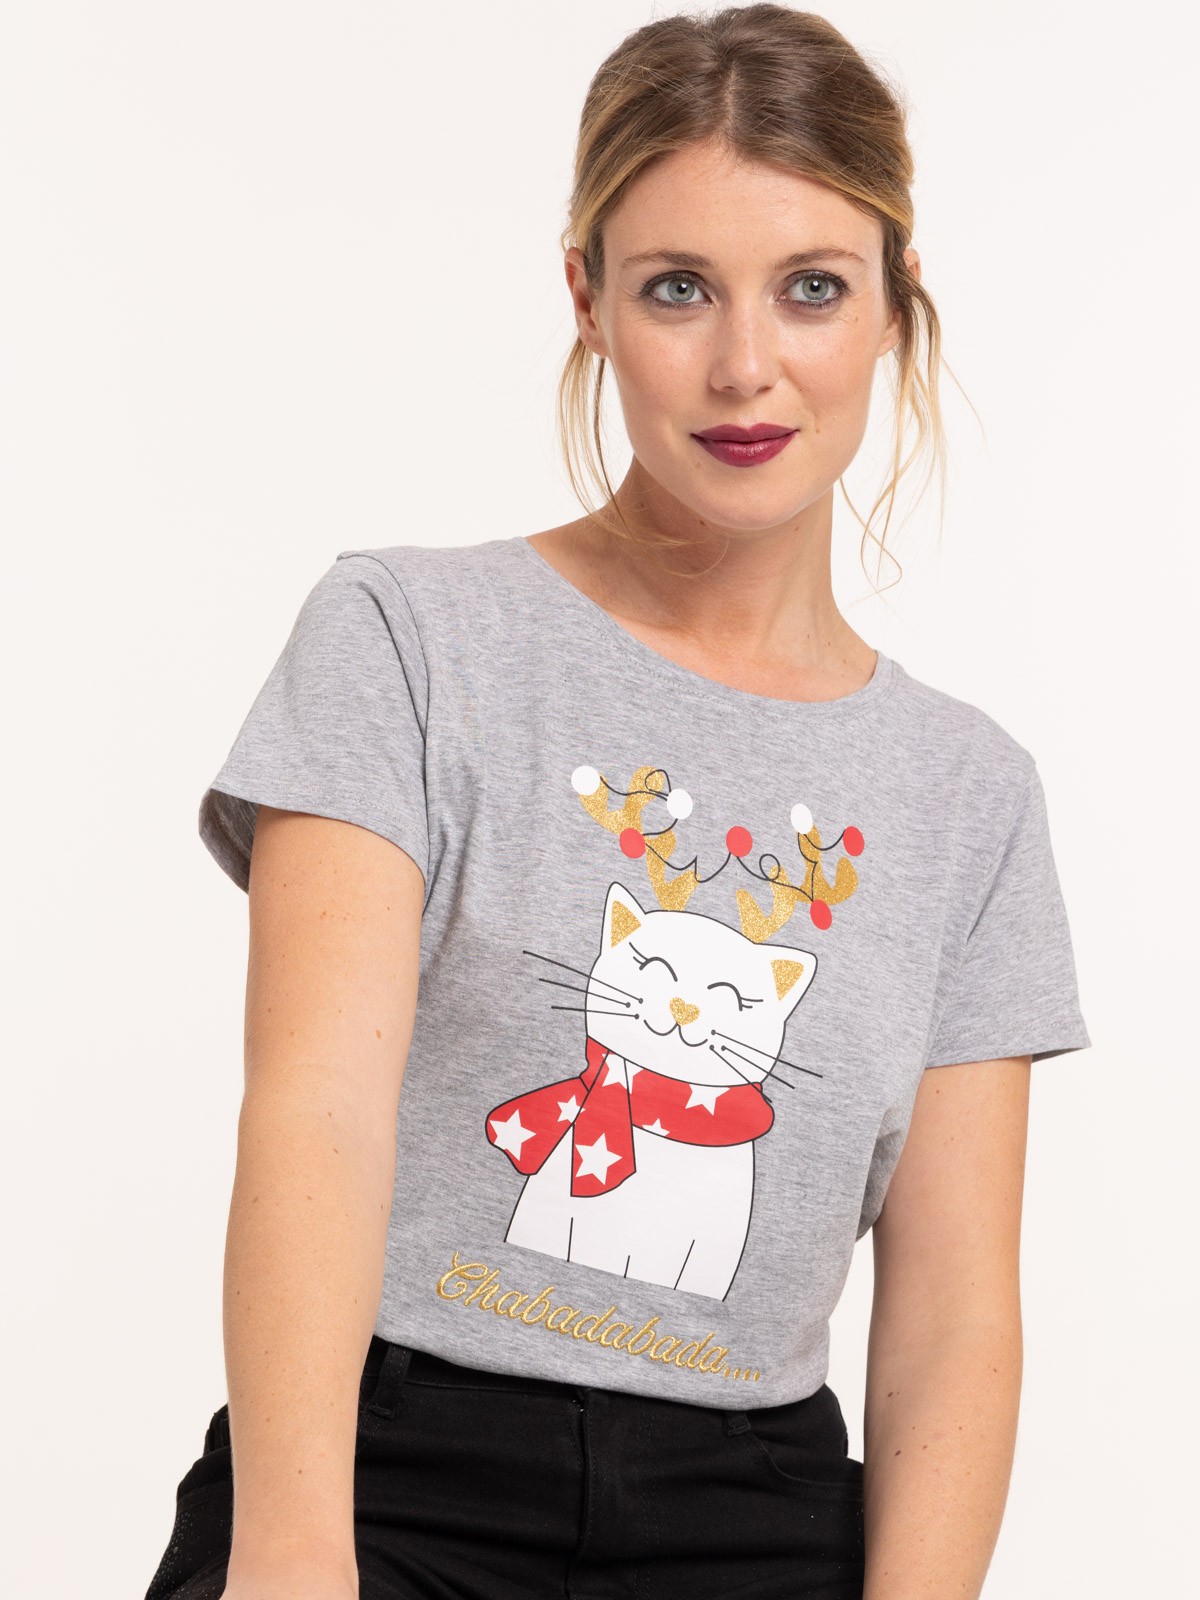 T-shirt chat de noël femme - DistriCenter